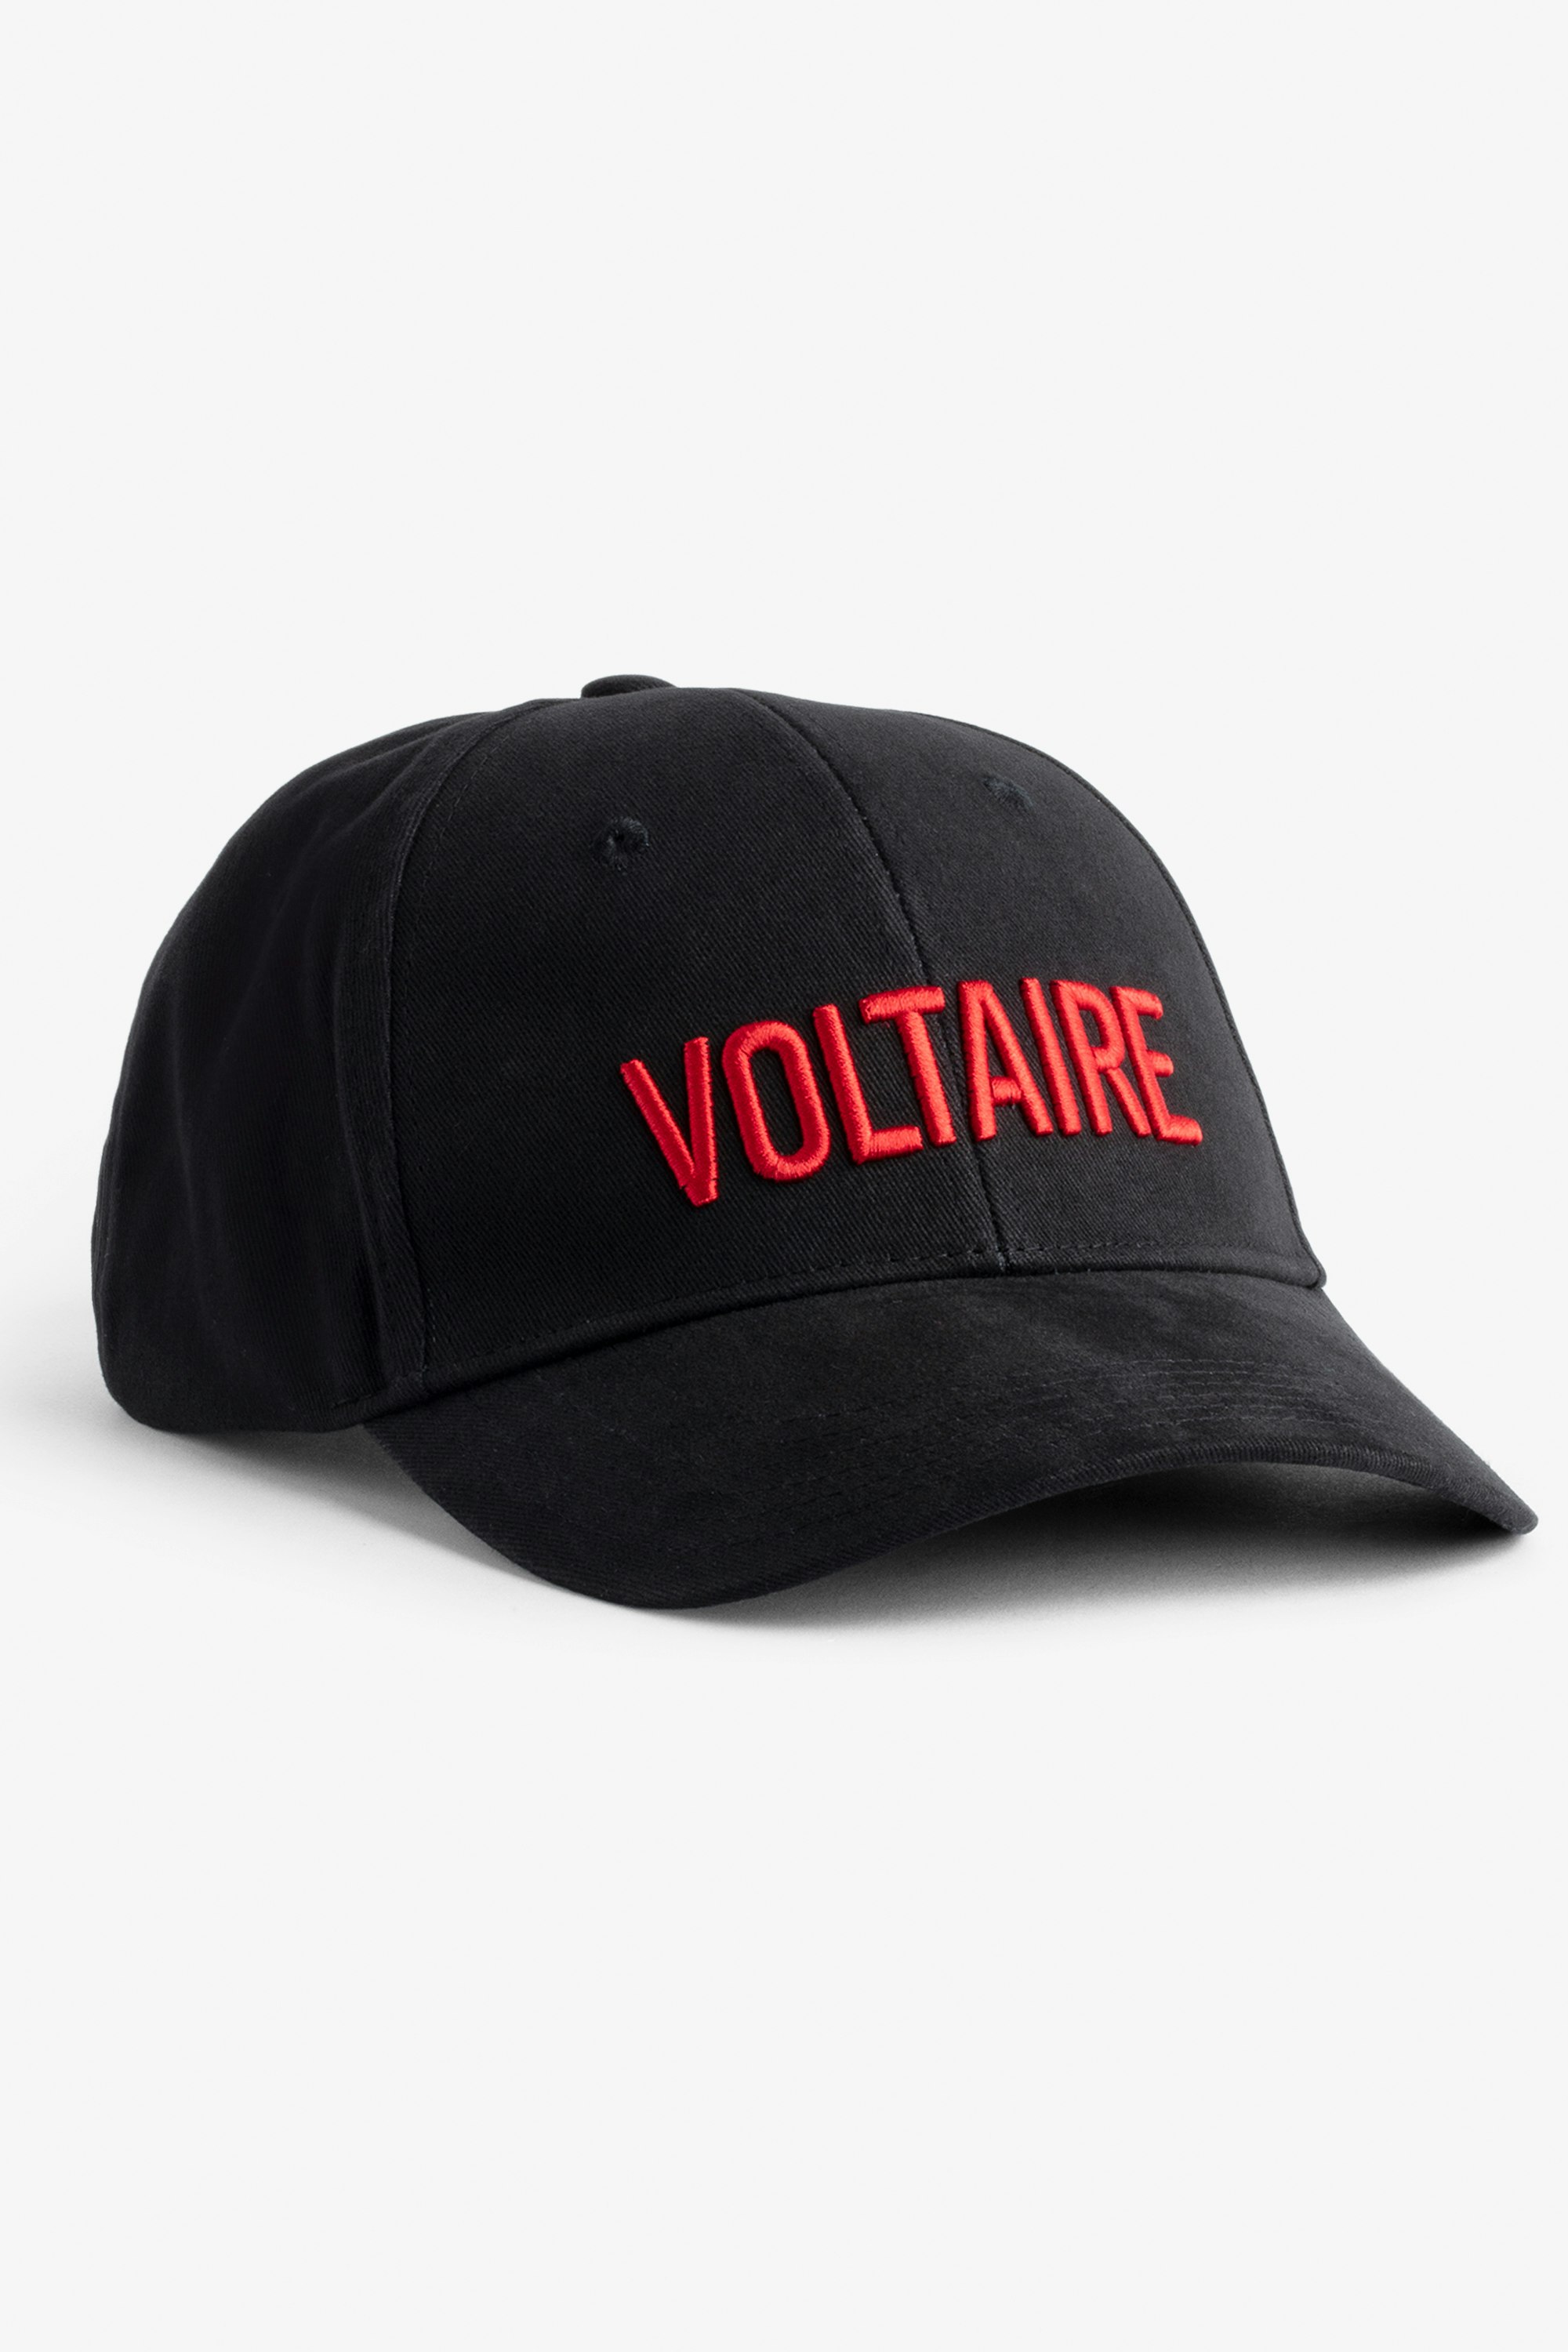 Klelia Voltaire Cap Women's Voltaire embroidered black cotton cap.